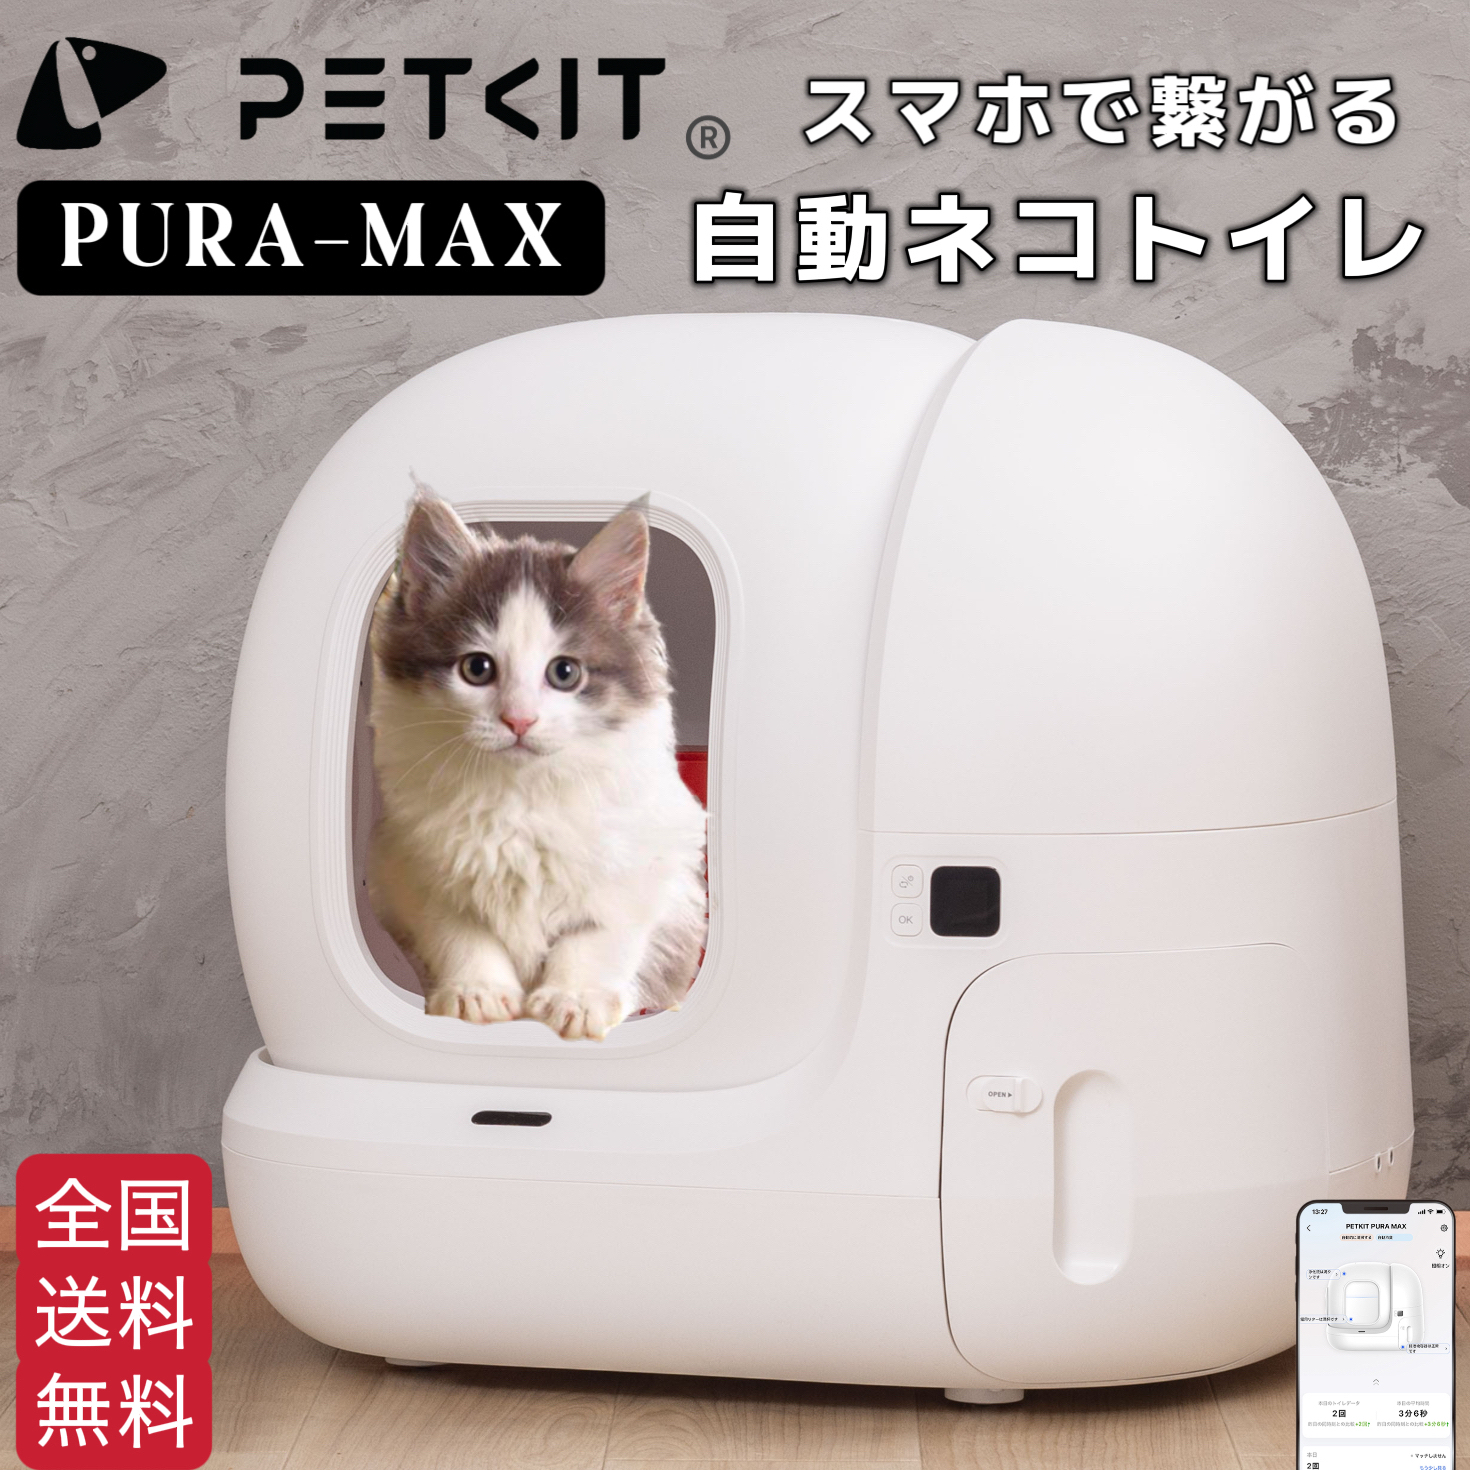 Amazon.co.jp: オーラティーン デンタルジェル 犬猫用 28g×3セット : ペット用品